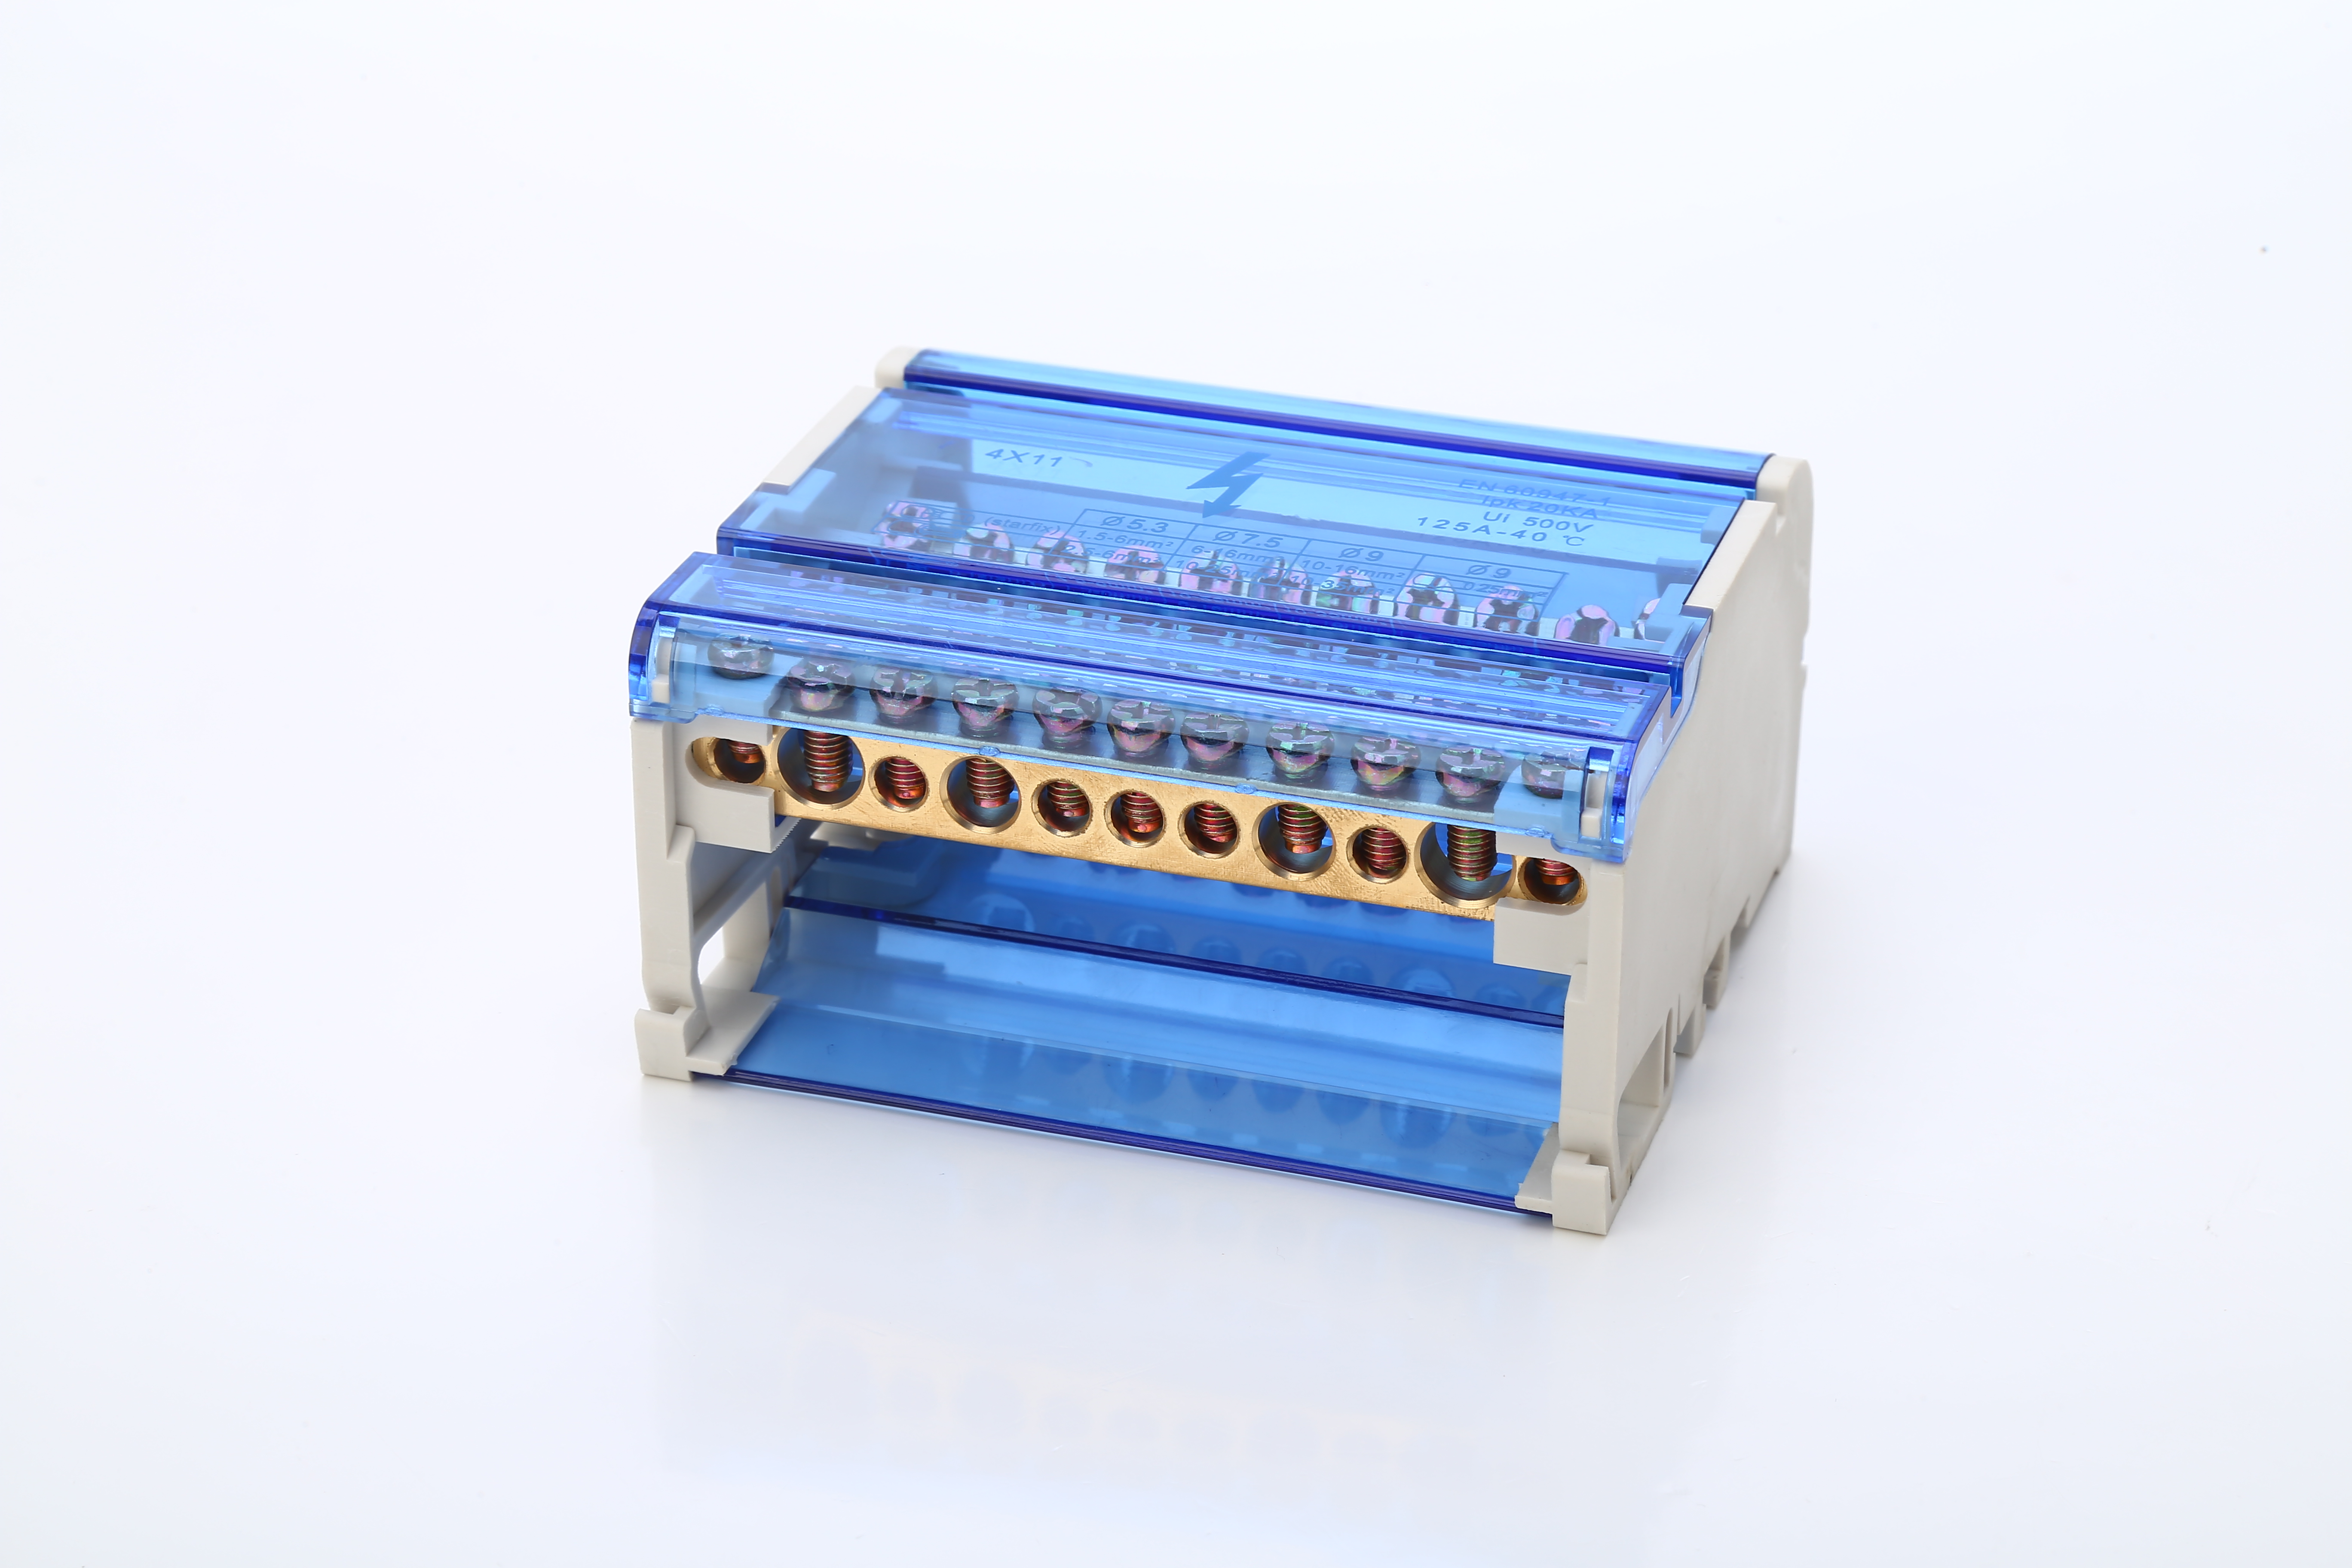 4P-11 DIN RAIL TERMINAL BLOCKS MODULAL SREAD การเชื่อมต่อพลังงานการกระจายบล็อกกล่องสากลสายไฟฟ้า